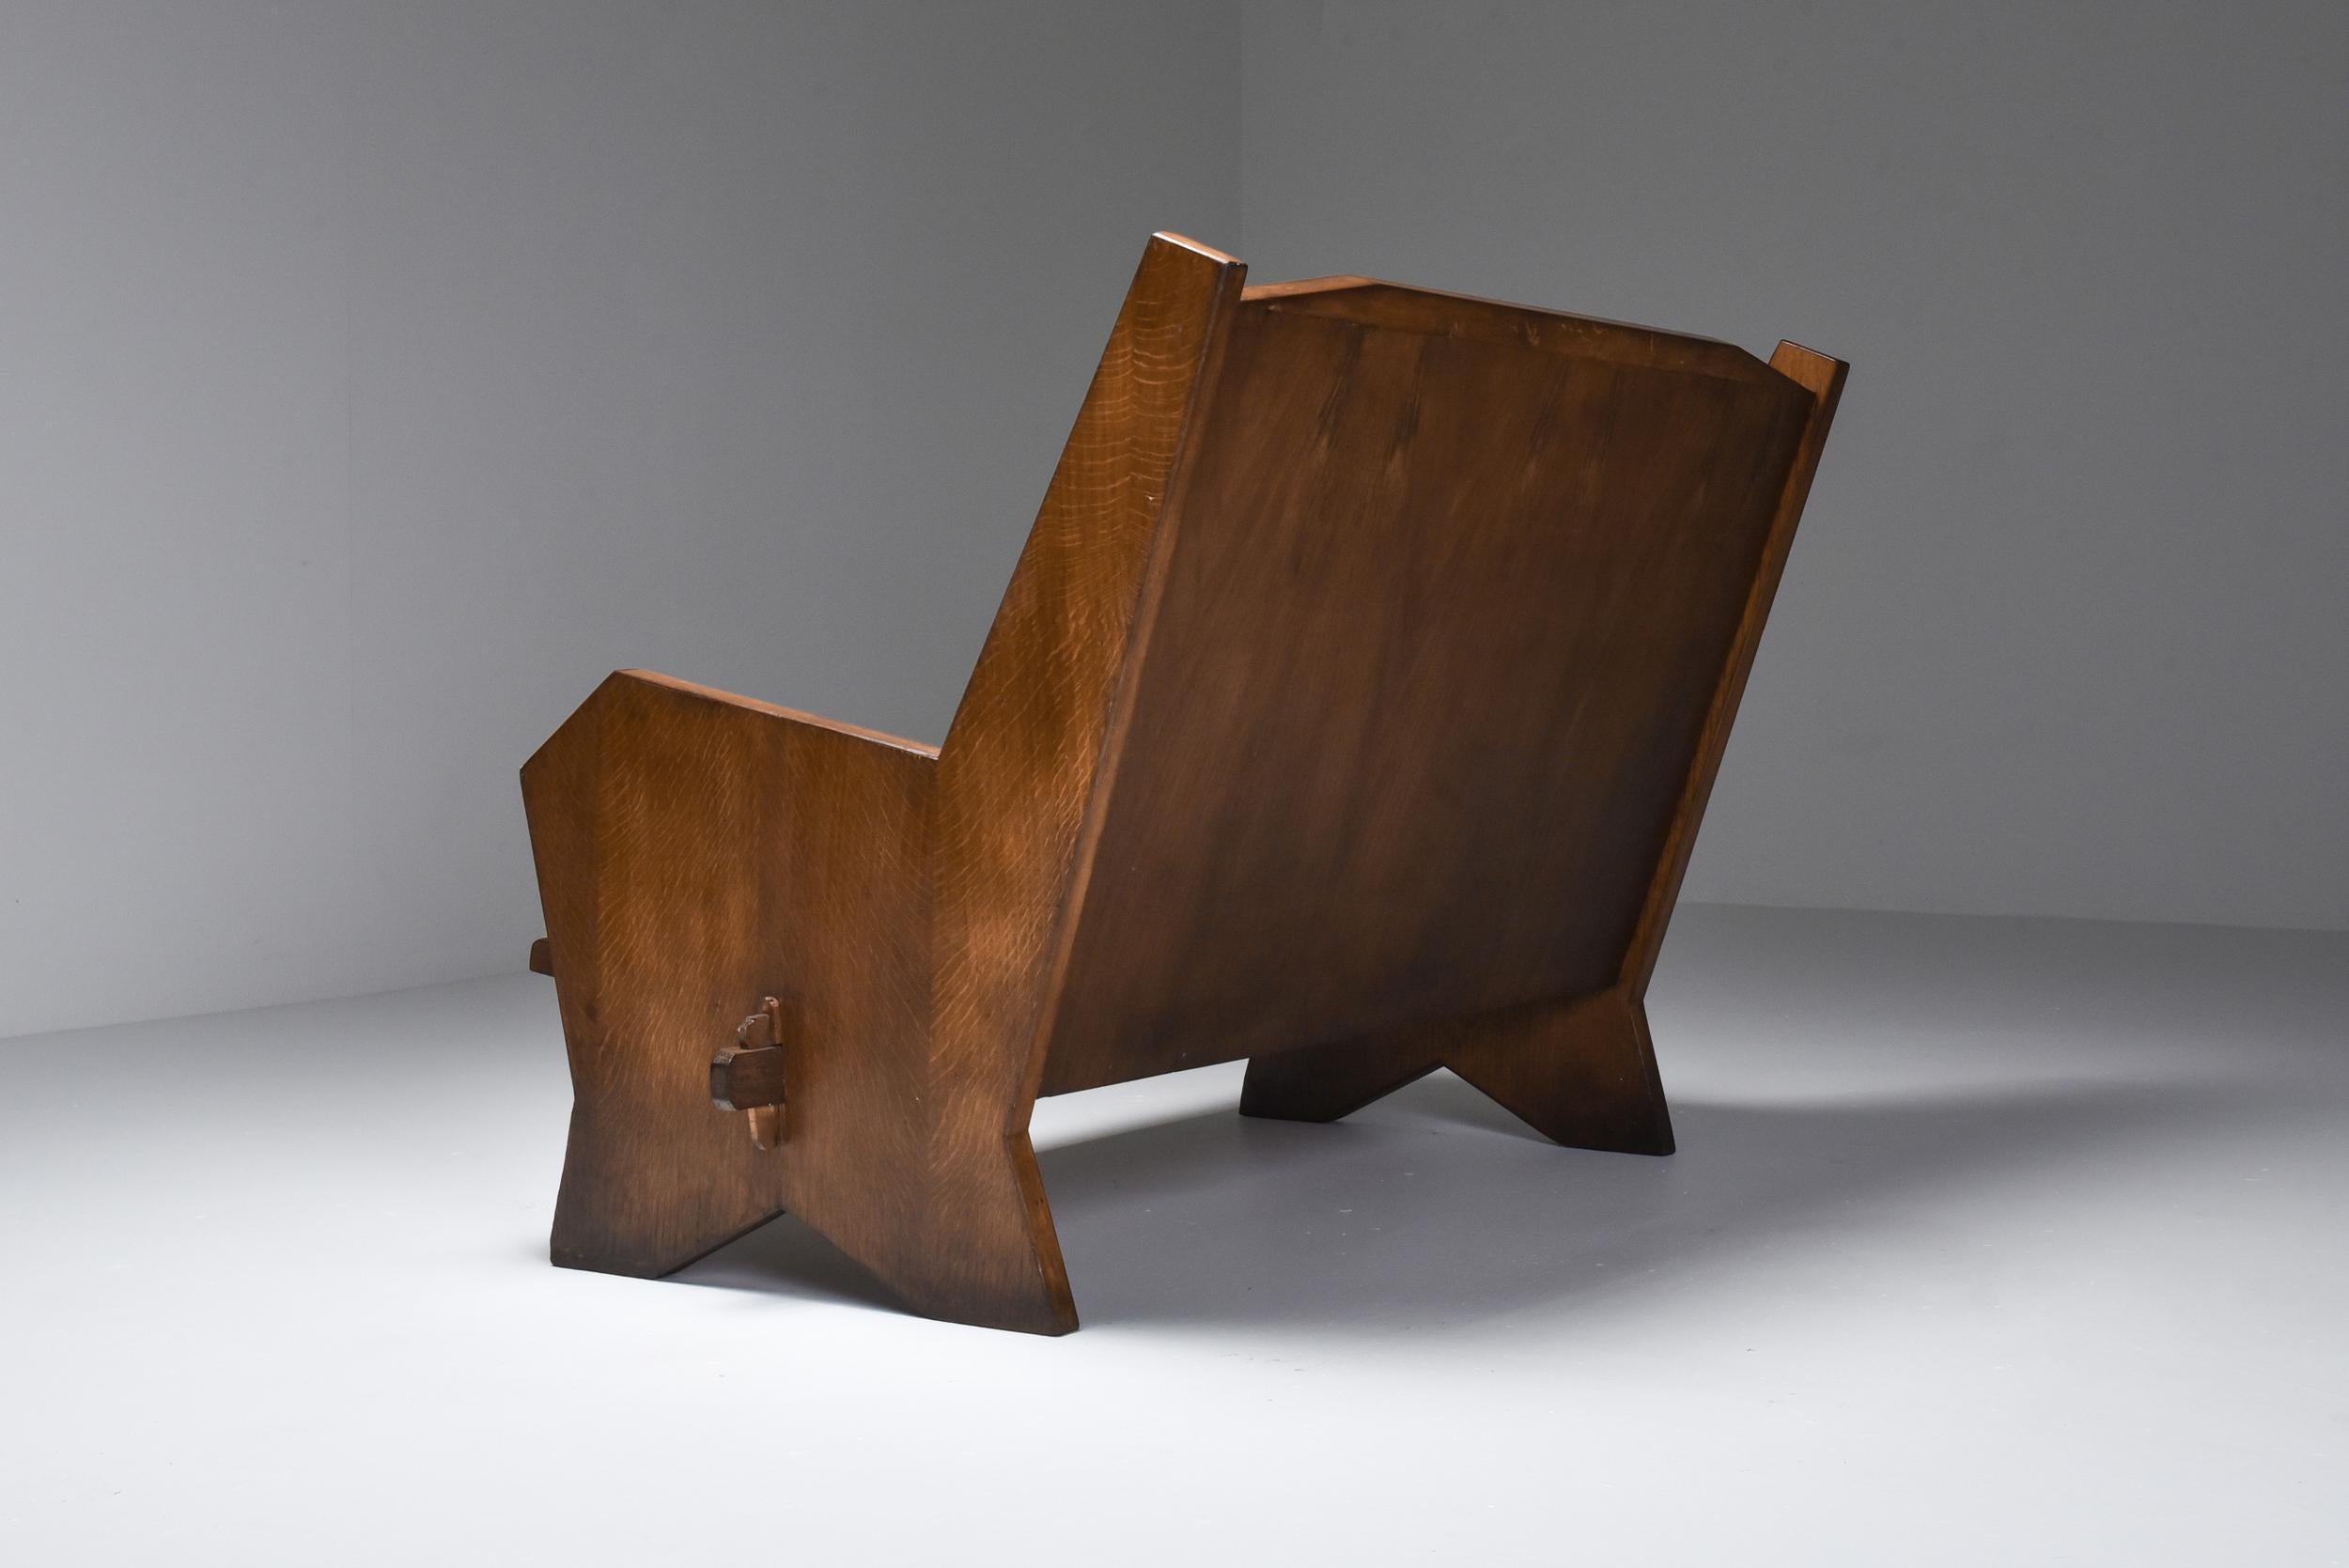 Rustikal modern, Art Deco Stil, kubistischer Sessel, Italien, 1940er Jahre

Die handwerklichen Verbindungen verleihen diesen Art-Déco-Stühlen eine sehr rustikale Ausstrahlung.
Was eigentlich ein Stilkonflikt sein sollte, ist eine himmlische